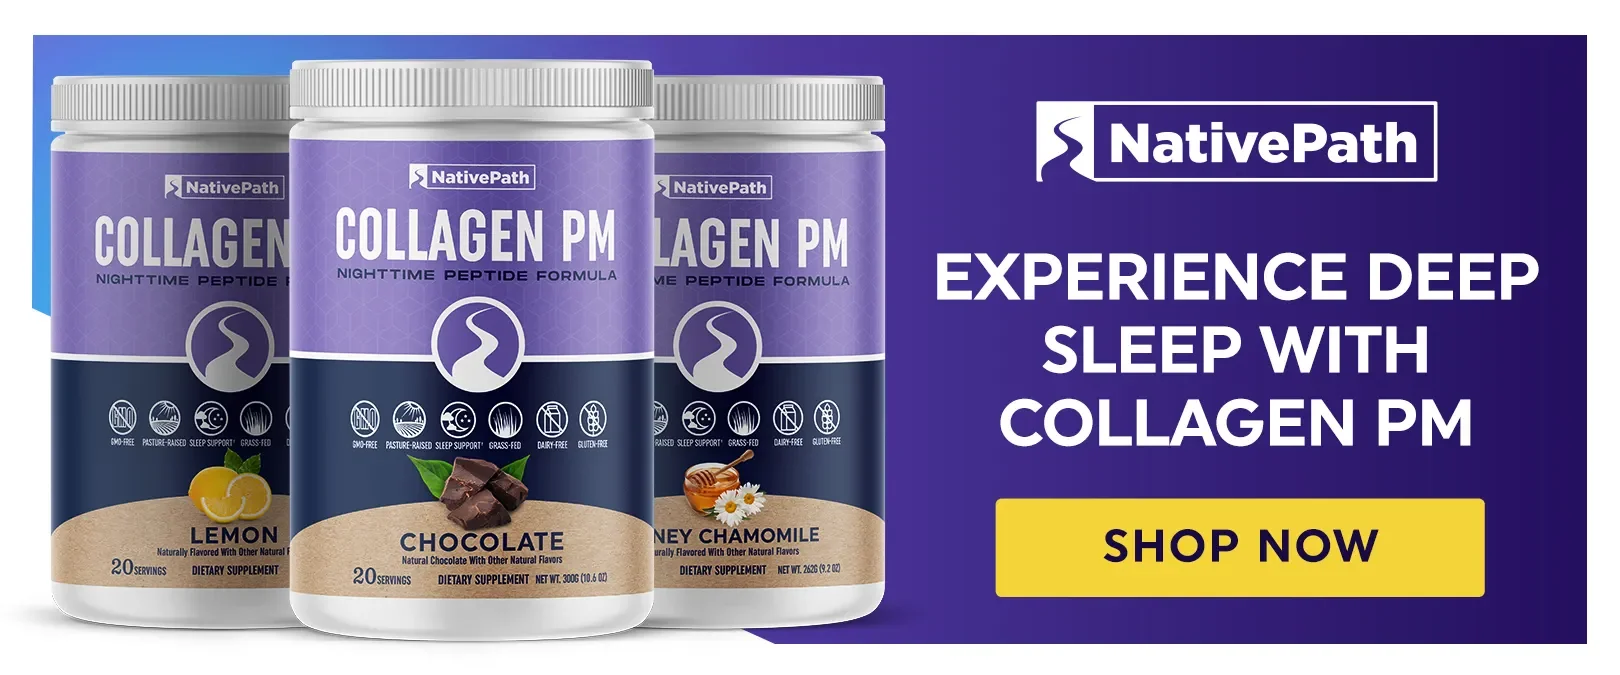 NativePath Collagen PM Sleep Supplement for Deep Sleep